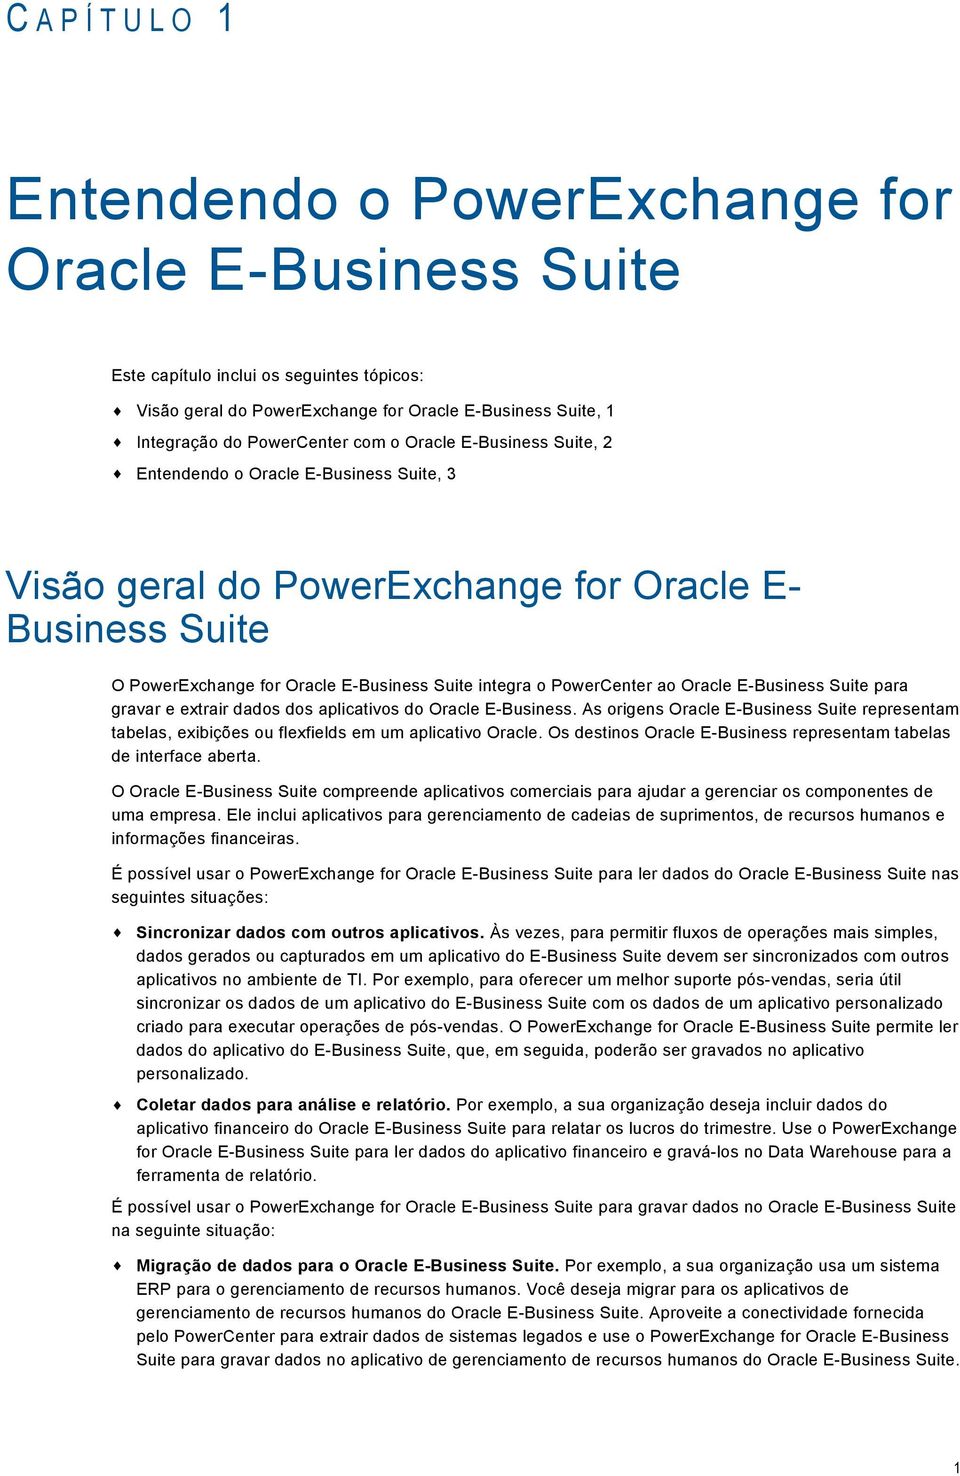 PowerCenter ao Oracle E-Business Suite para gravar e extrair dados dos aplicativos do Oracle E-Business.